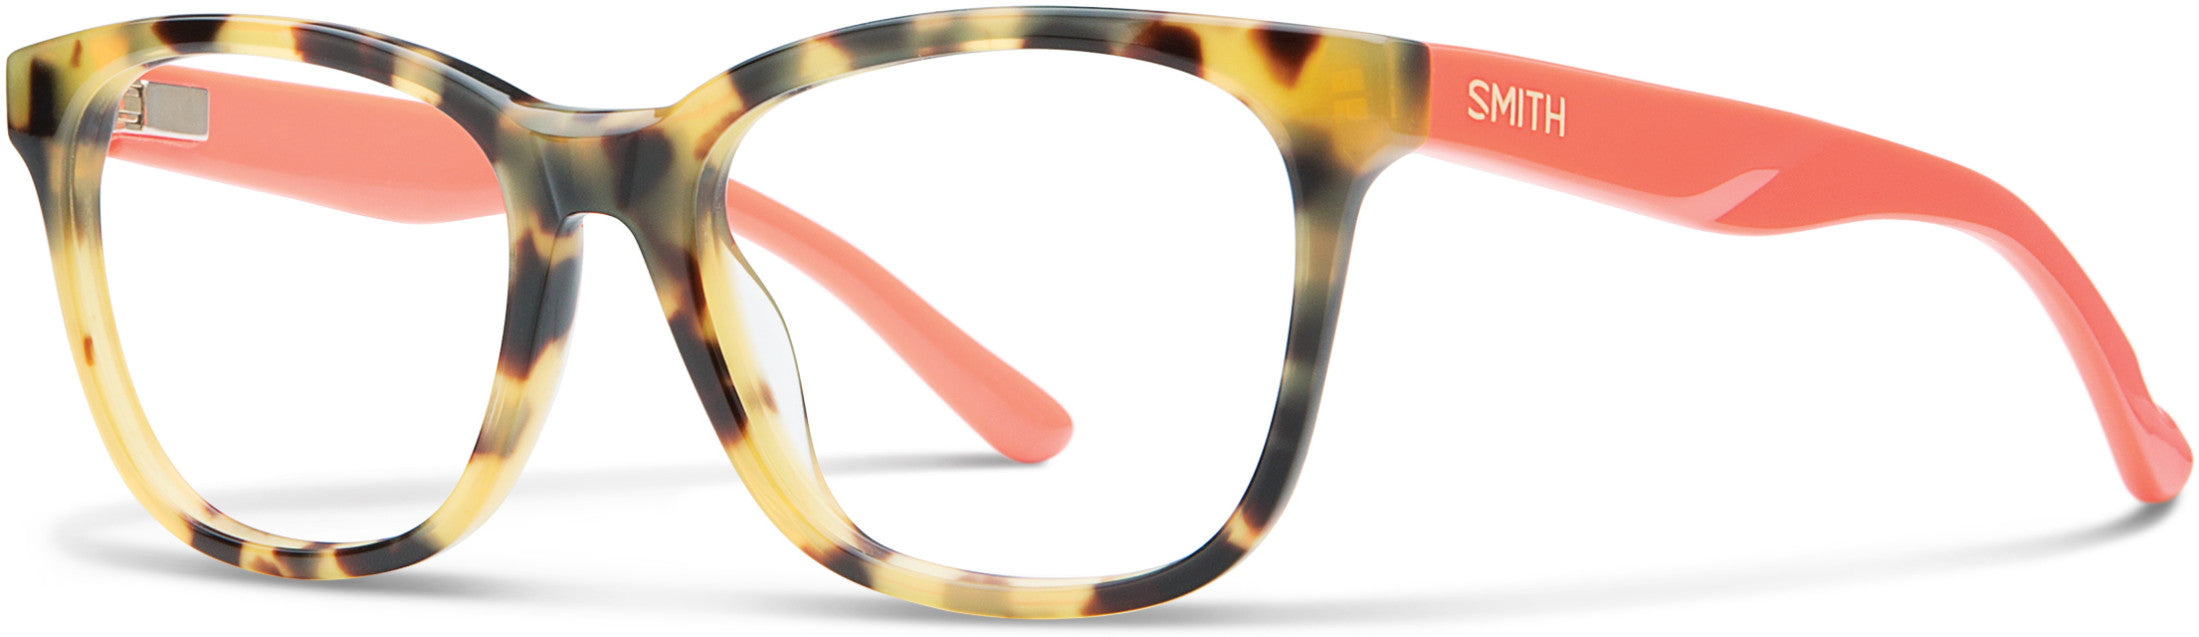 Smith Chaser Rectangular Eyeglasses 0P80-0P80  Gold Havana Pink (00 Demo Lens)